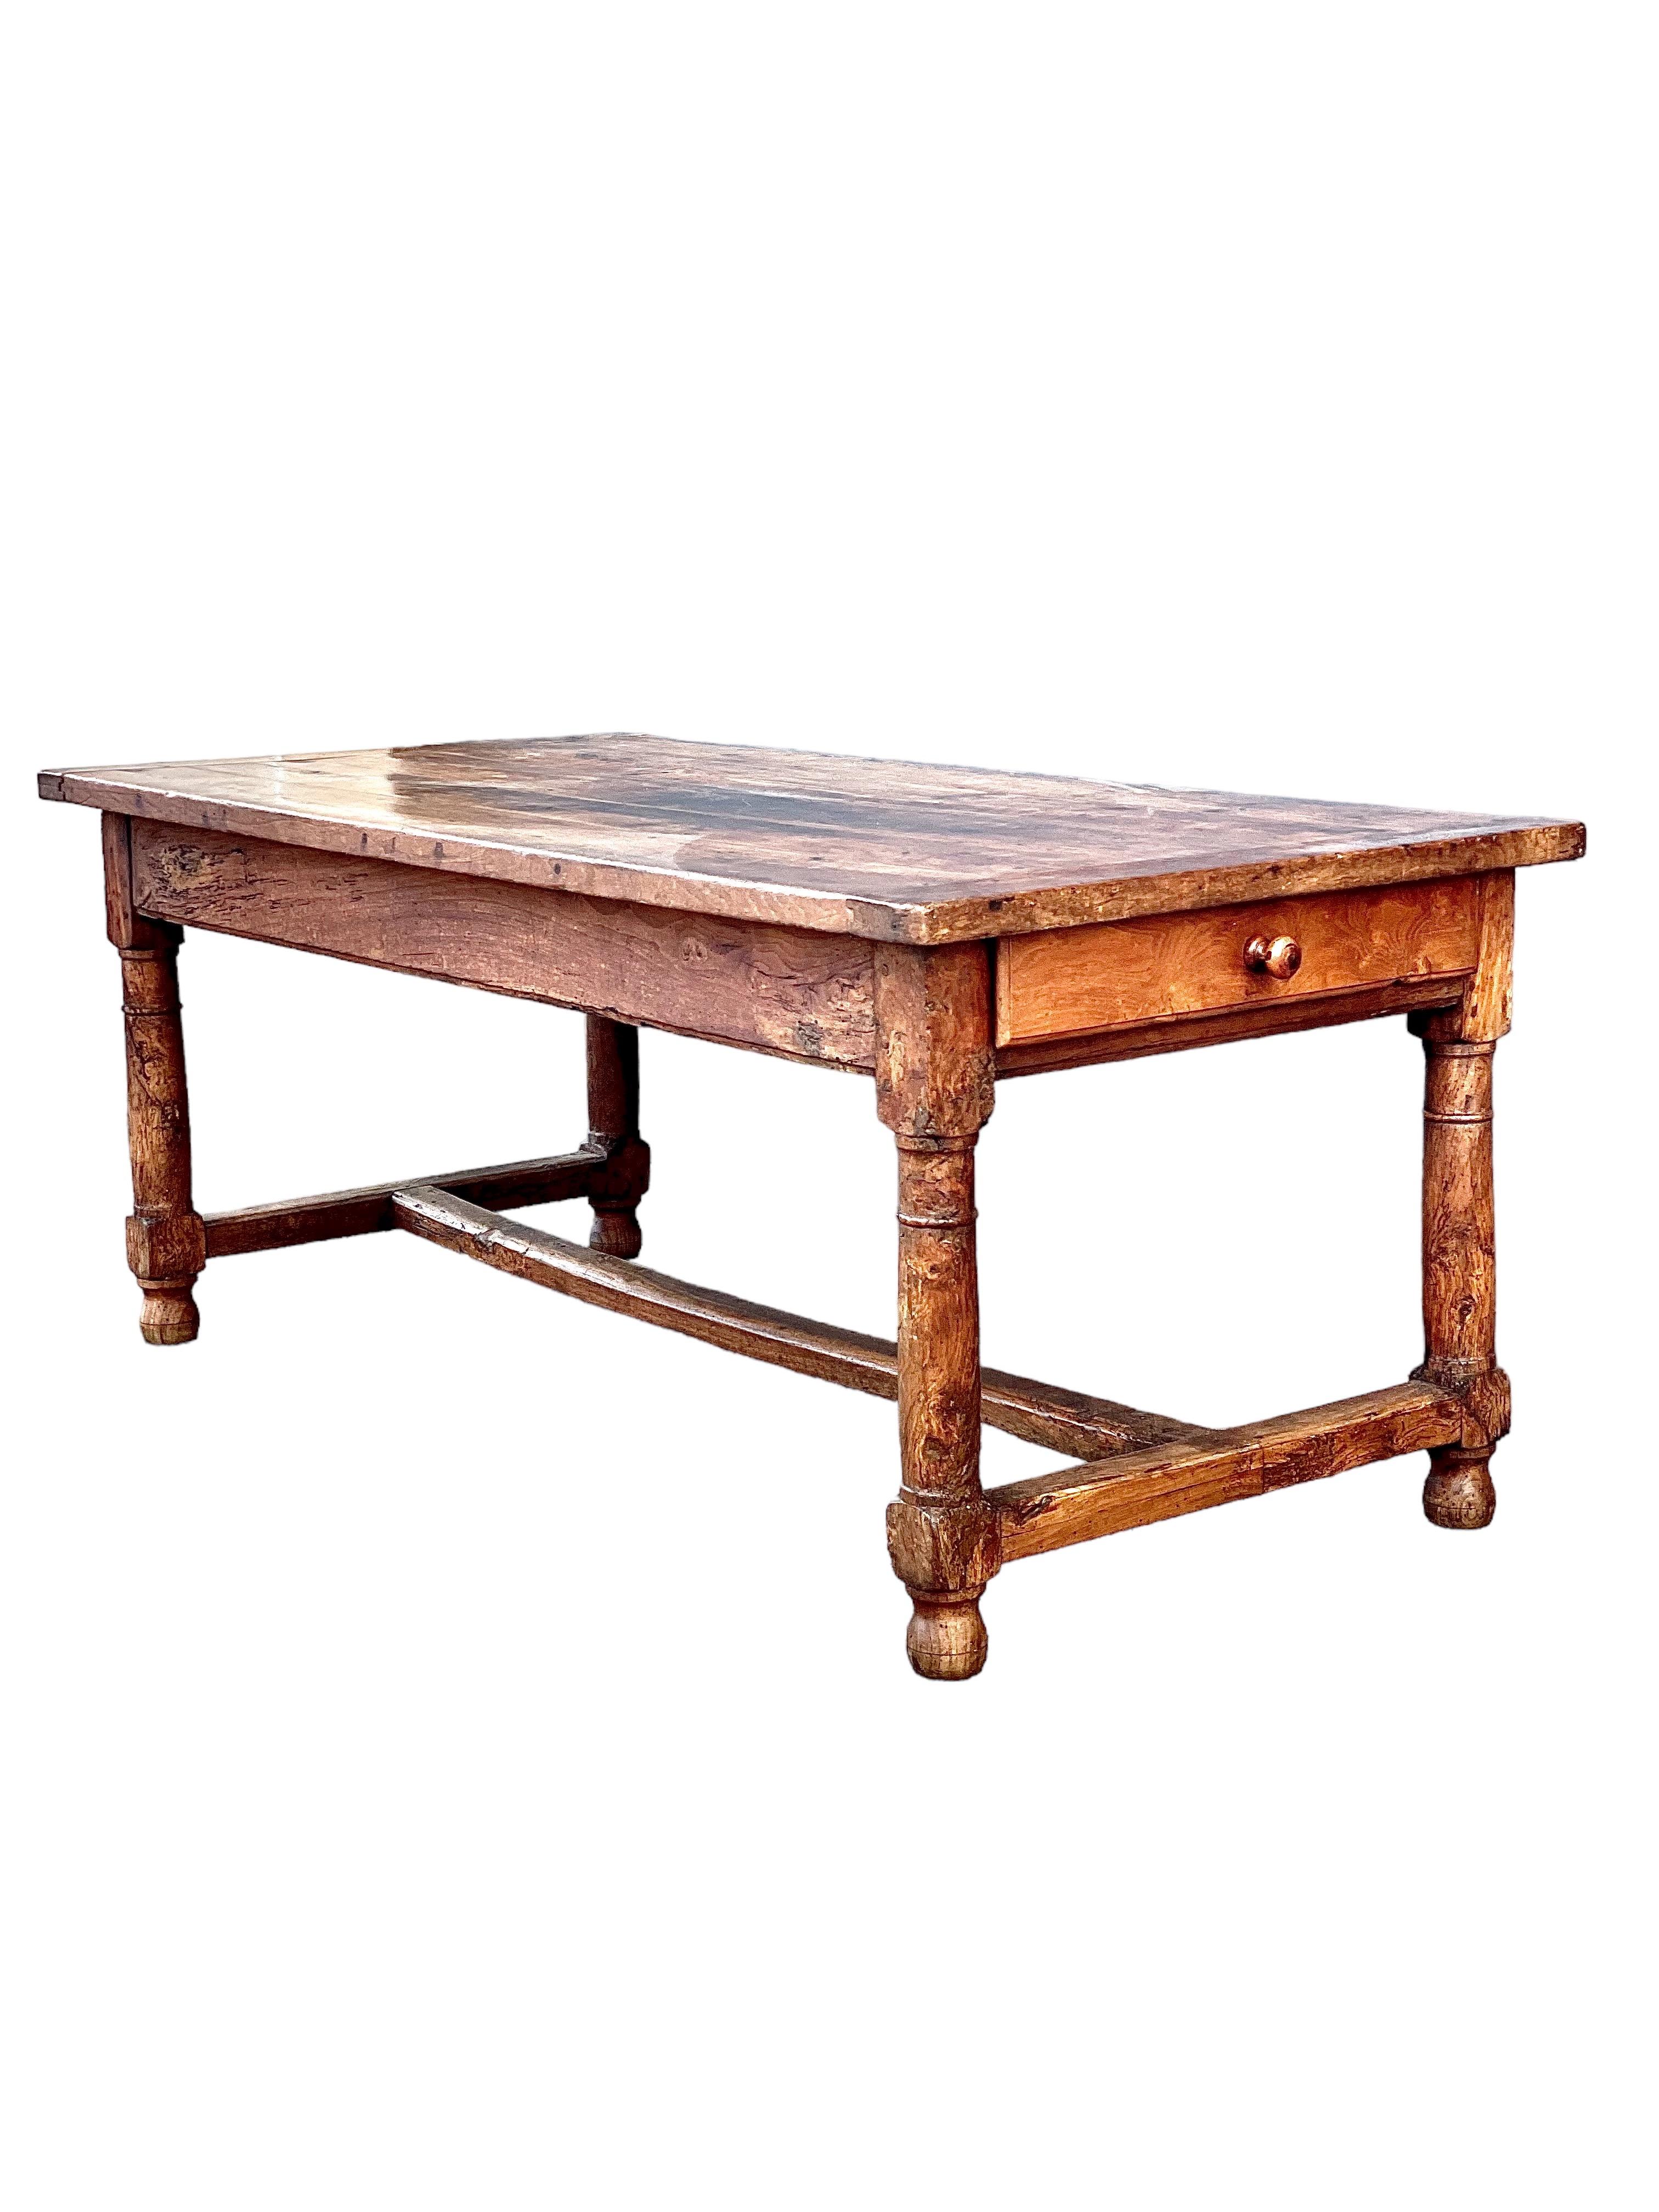 Une magnifique table de cuisine de ferme française, datant du 18ème siècle et pleine de caractère. Cette table rectangulaire robuste possède son plateau d'origine en planches et ses extrémités cloutées. Elle repose sur d'épais pieds tournés en